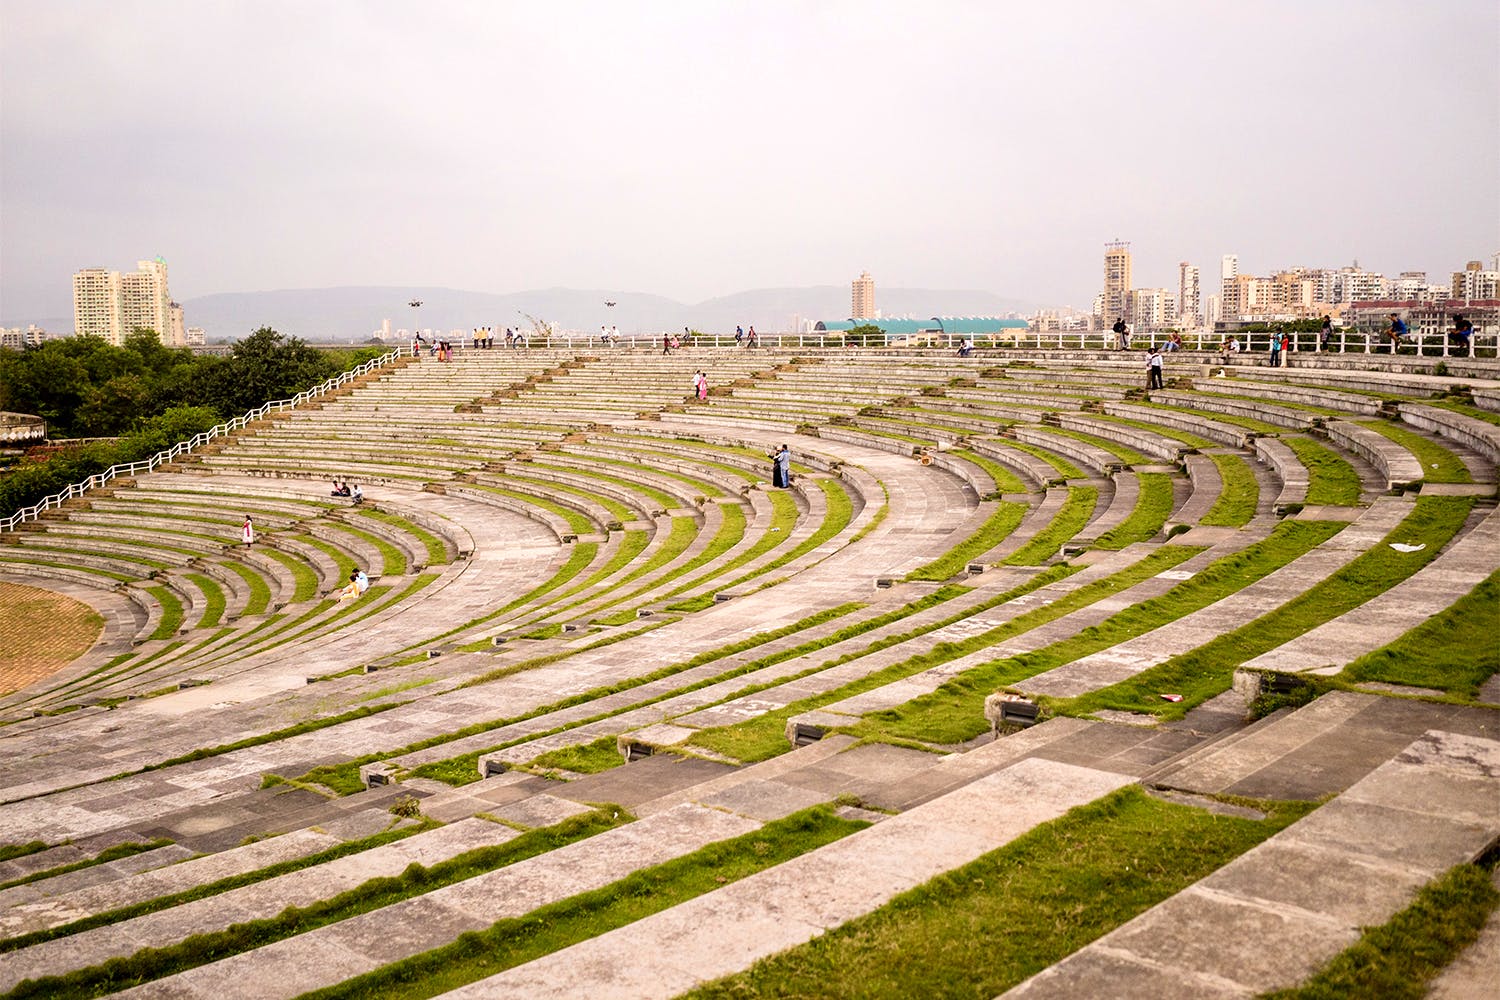 Amphitheatre,Landscape,Architecture,Grass,Urban design,Building,City